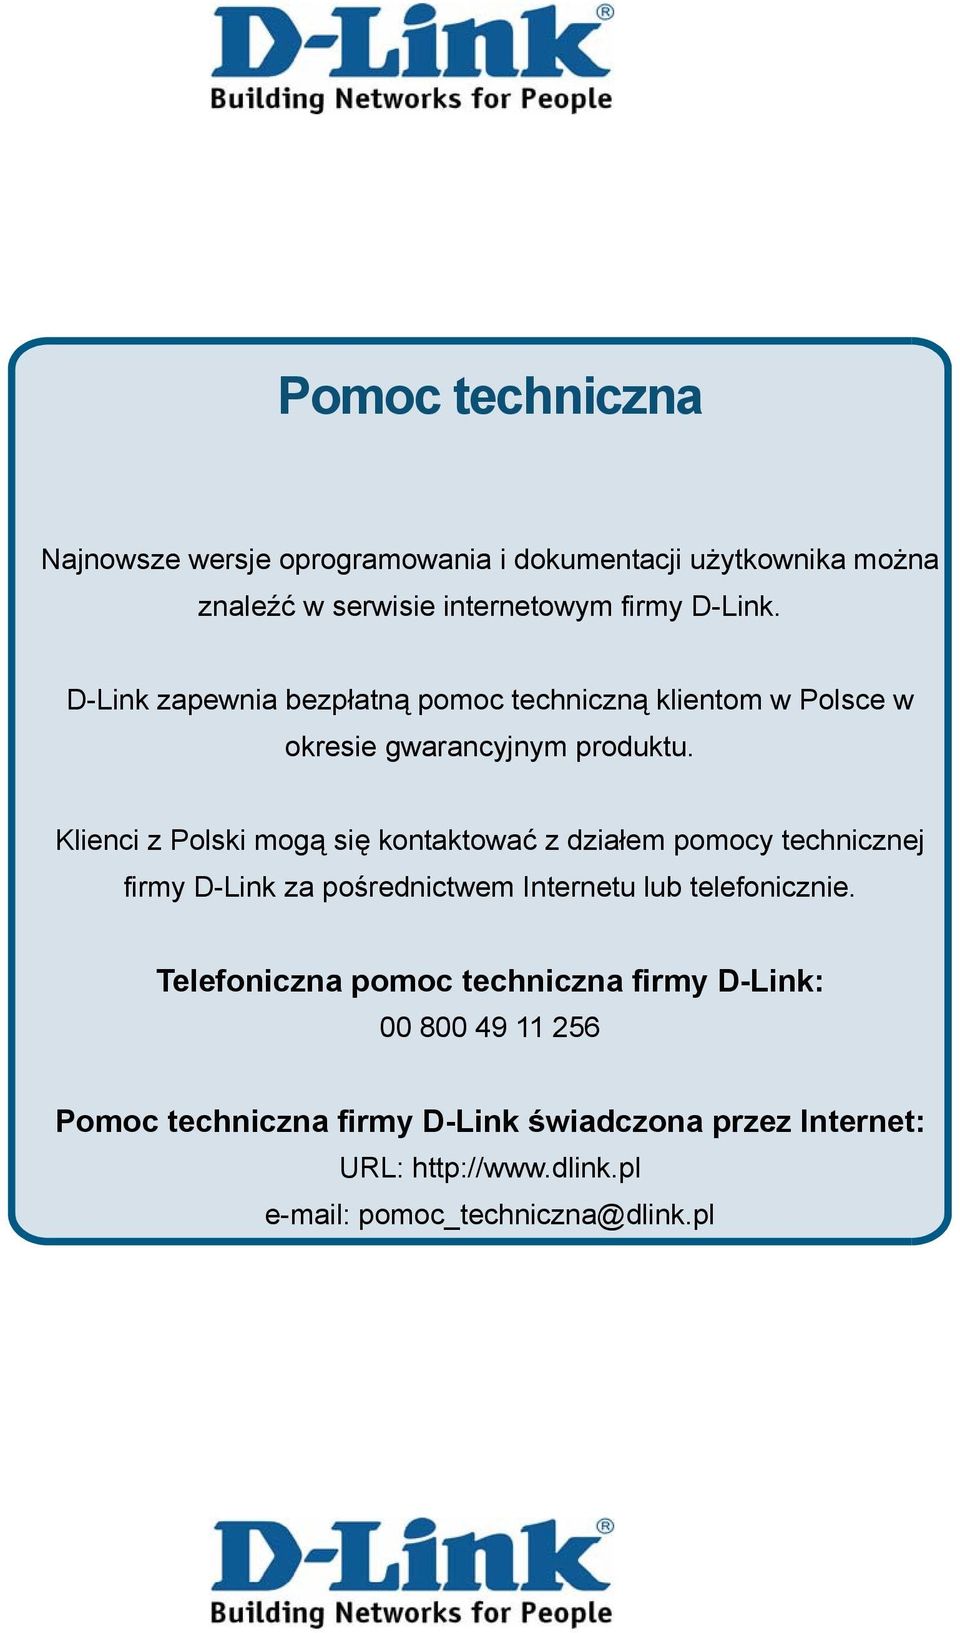 Klienci z Polski mogą się kontaktować z działem pomocy technicznej firmy D-Link za pośrednictwem Internetu lub telefonicznie.